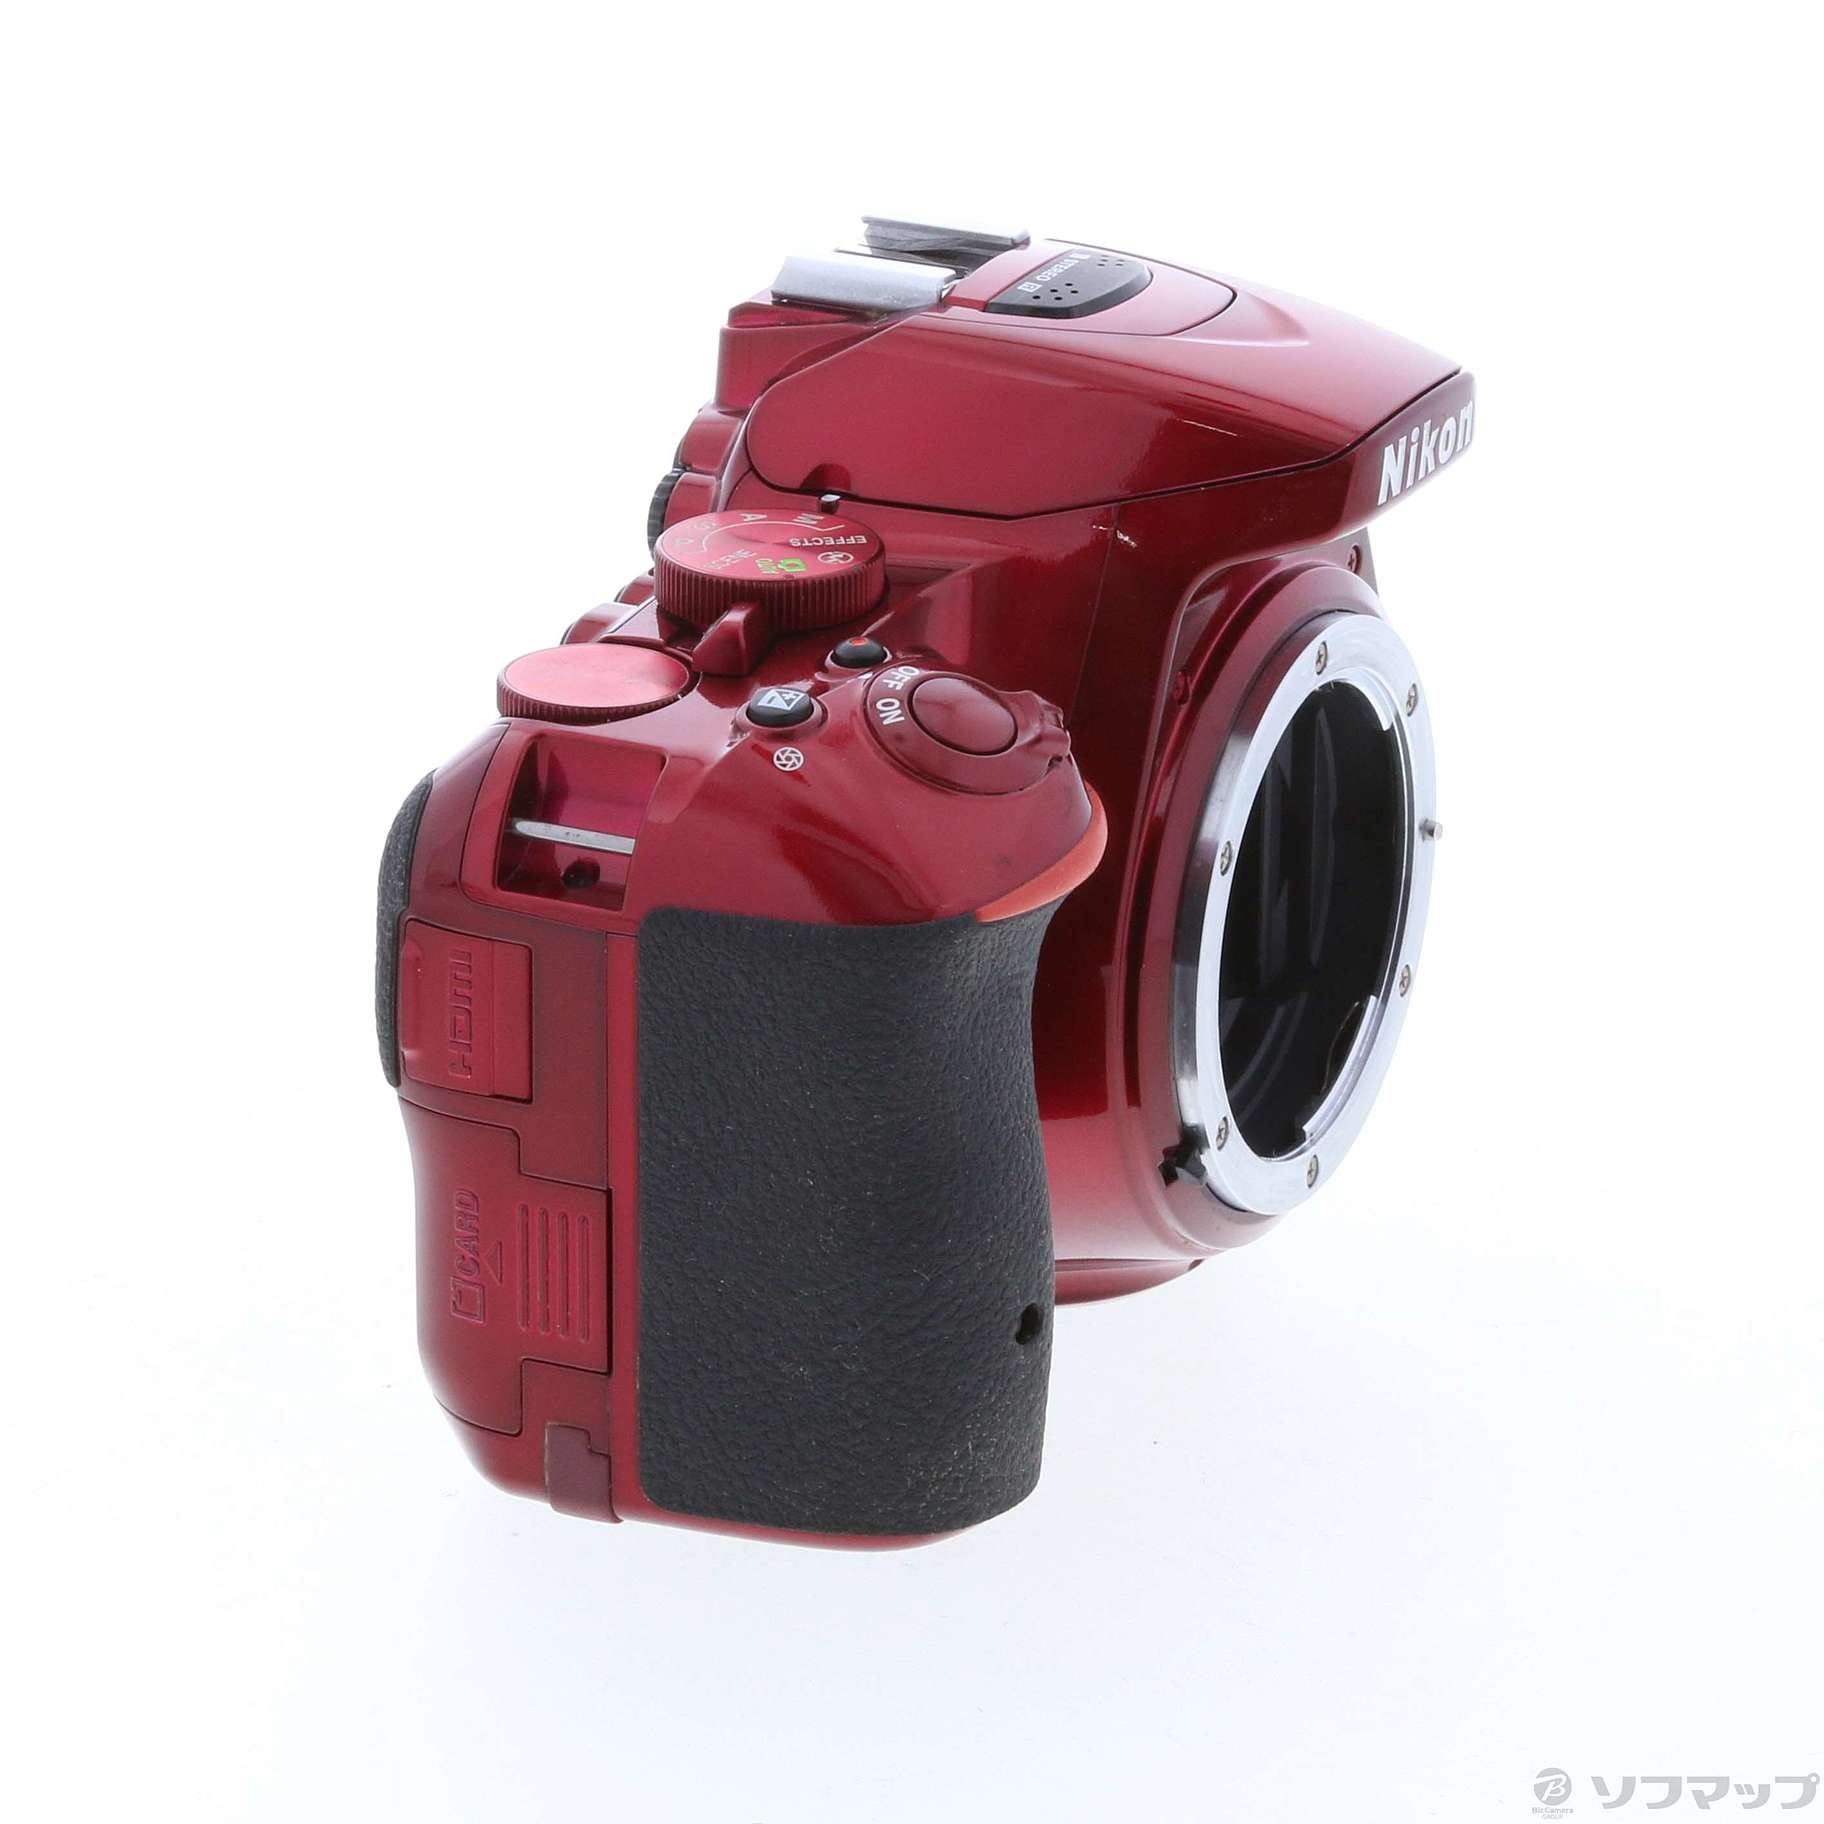 ニコン D5500 ボディ レッド - デジタルカメラ